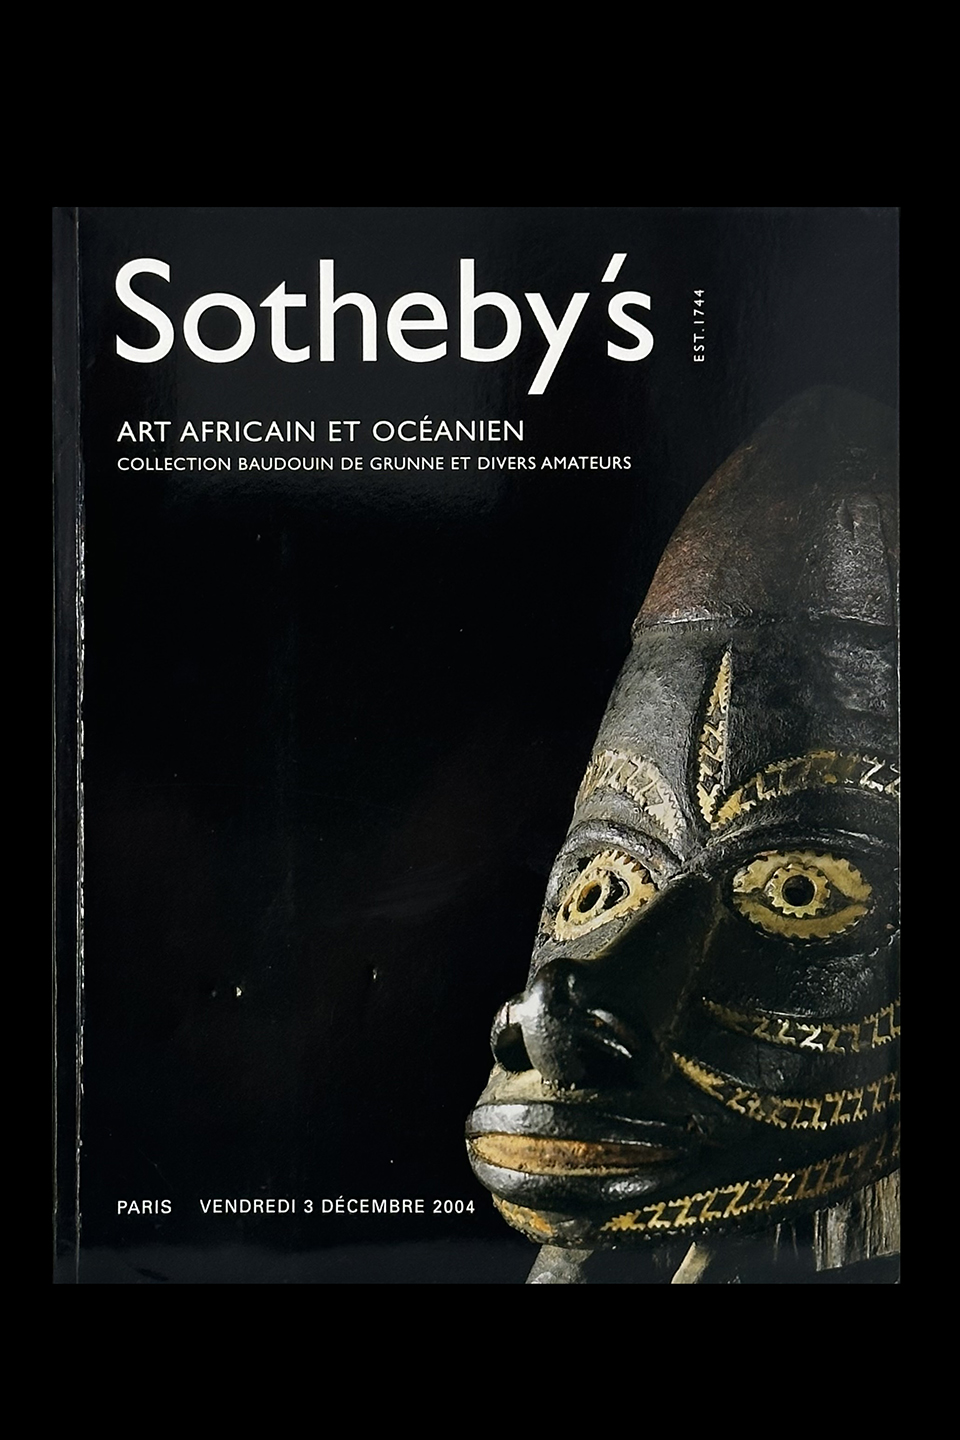  Sotheby's - Art Africain et Ocanien - Collection Baudouin De Grunne et Divers Amateurs- Paris, December, 2004